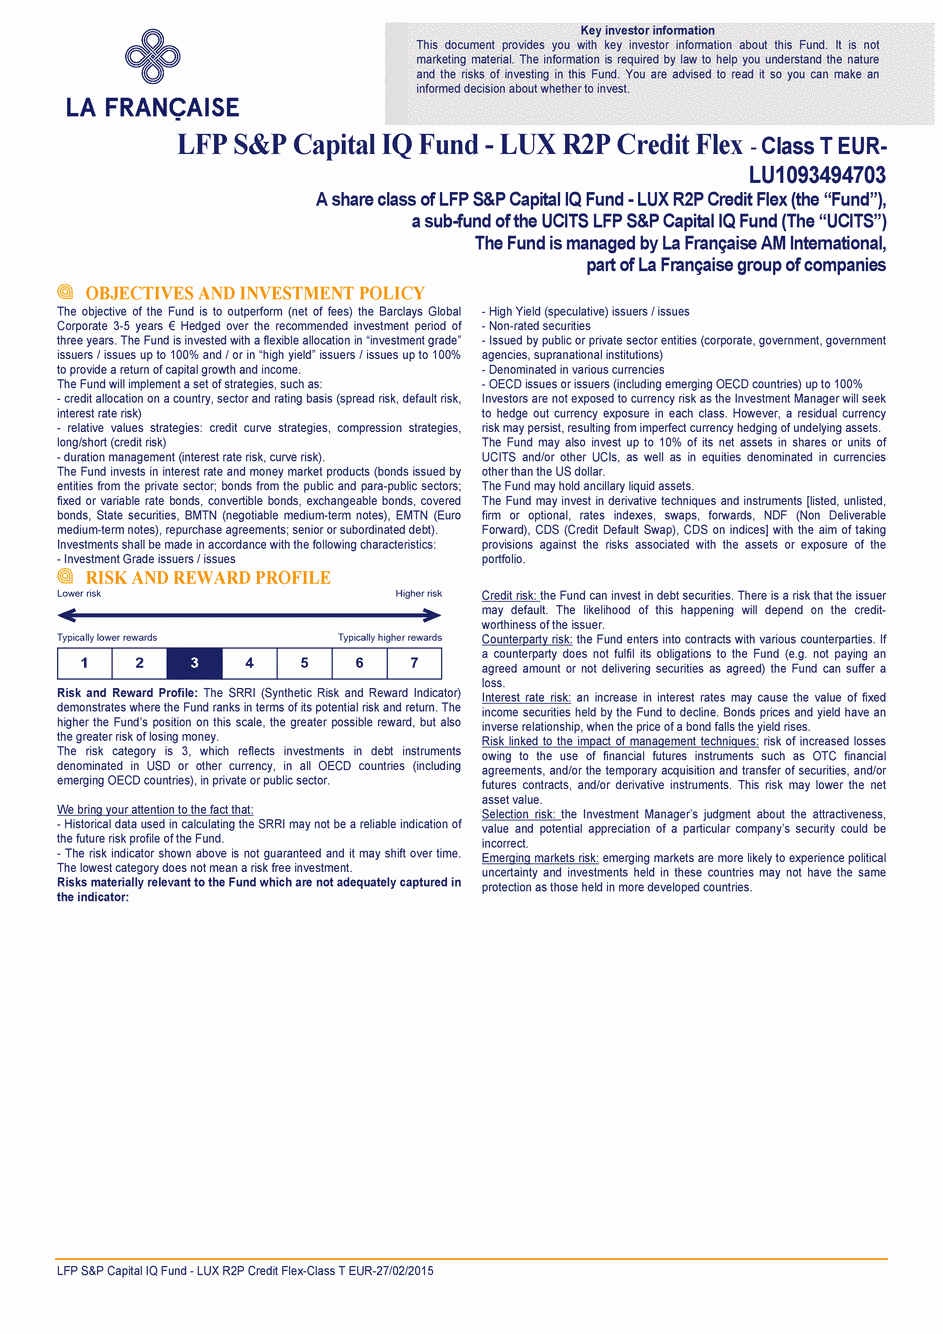 DICI LFP S&P Capital IQ Fund - LUX R2P Credit Flex T CAP EUR - 27/02/2015 - Anglais